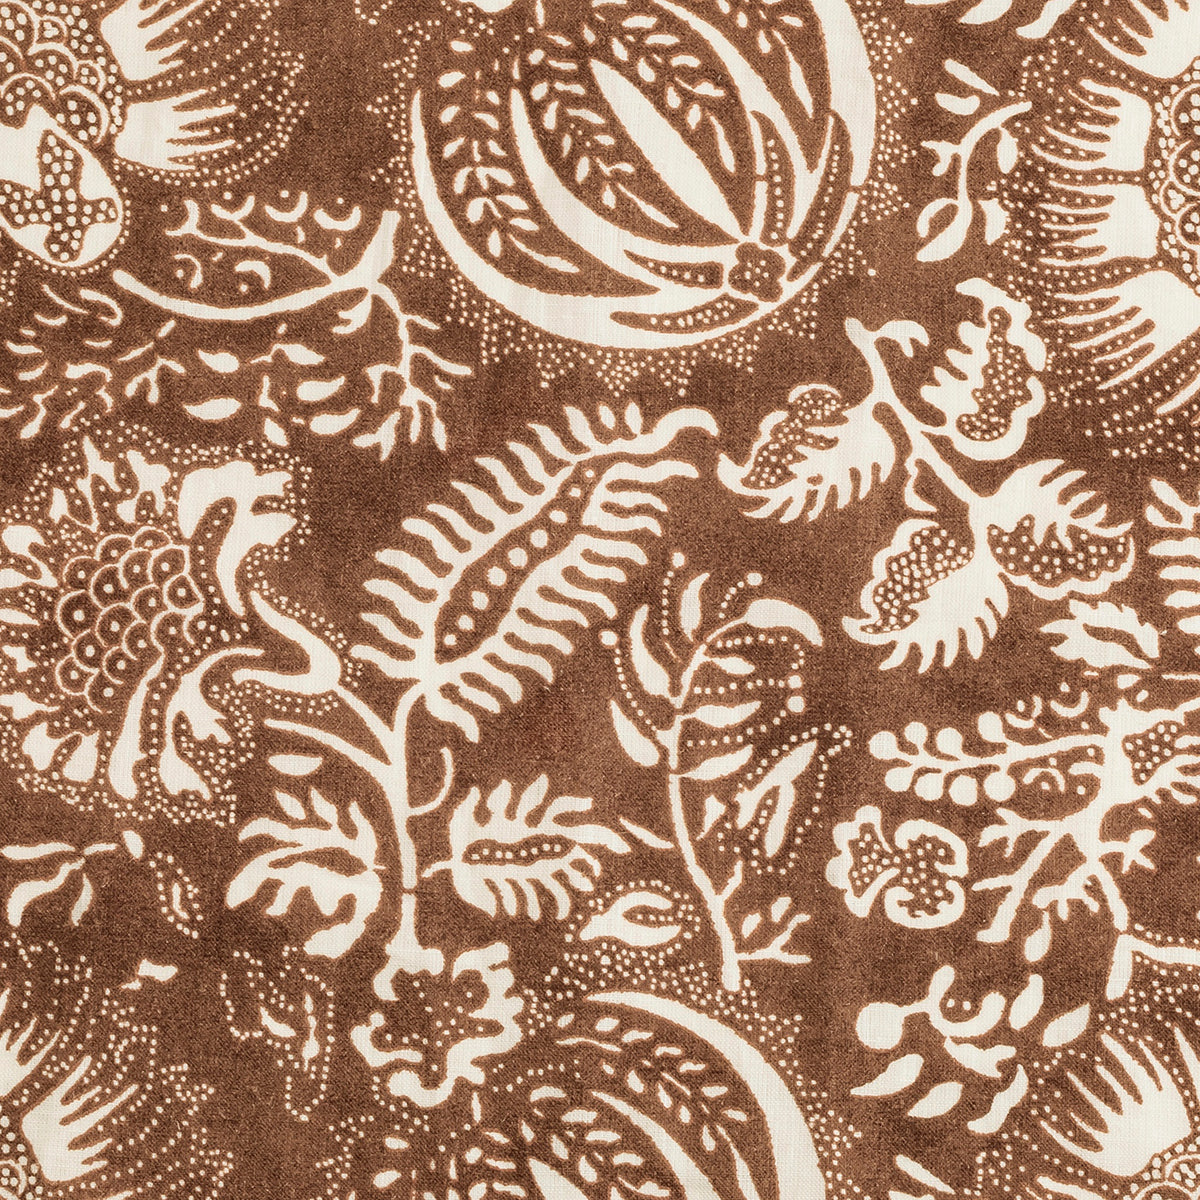 Swatch Sample of Matouk Granada Linen Tissue Box Cover in Chestnut Color